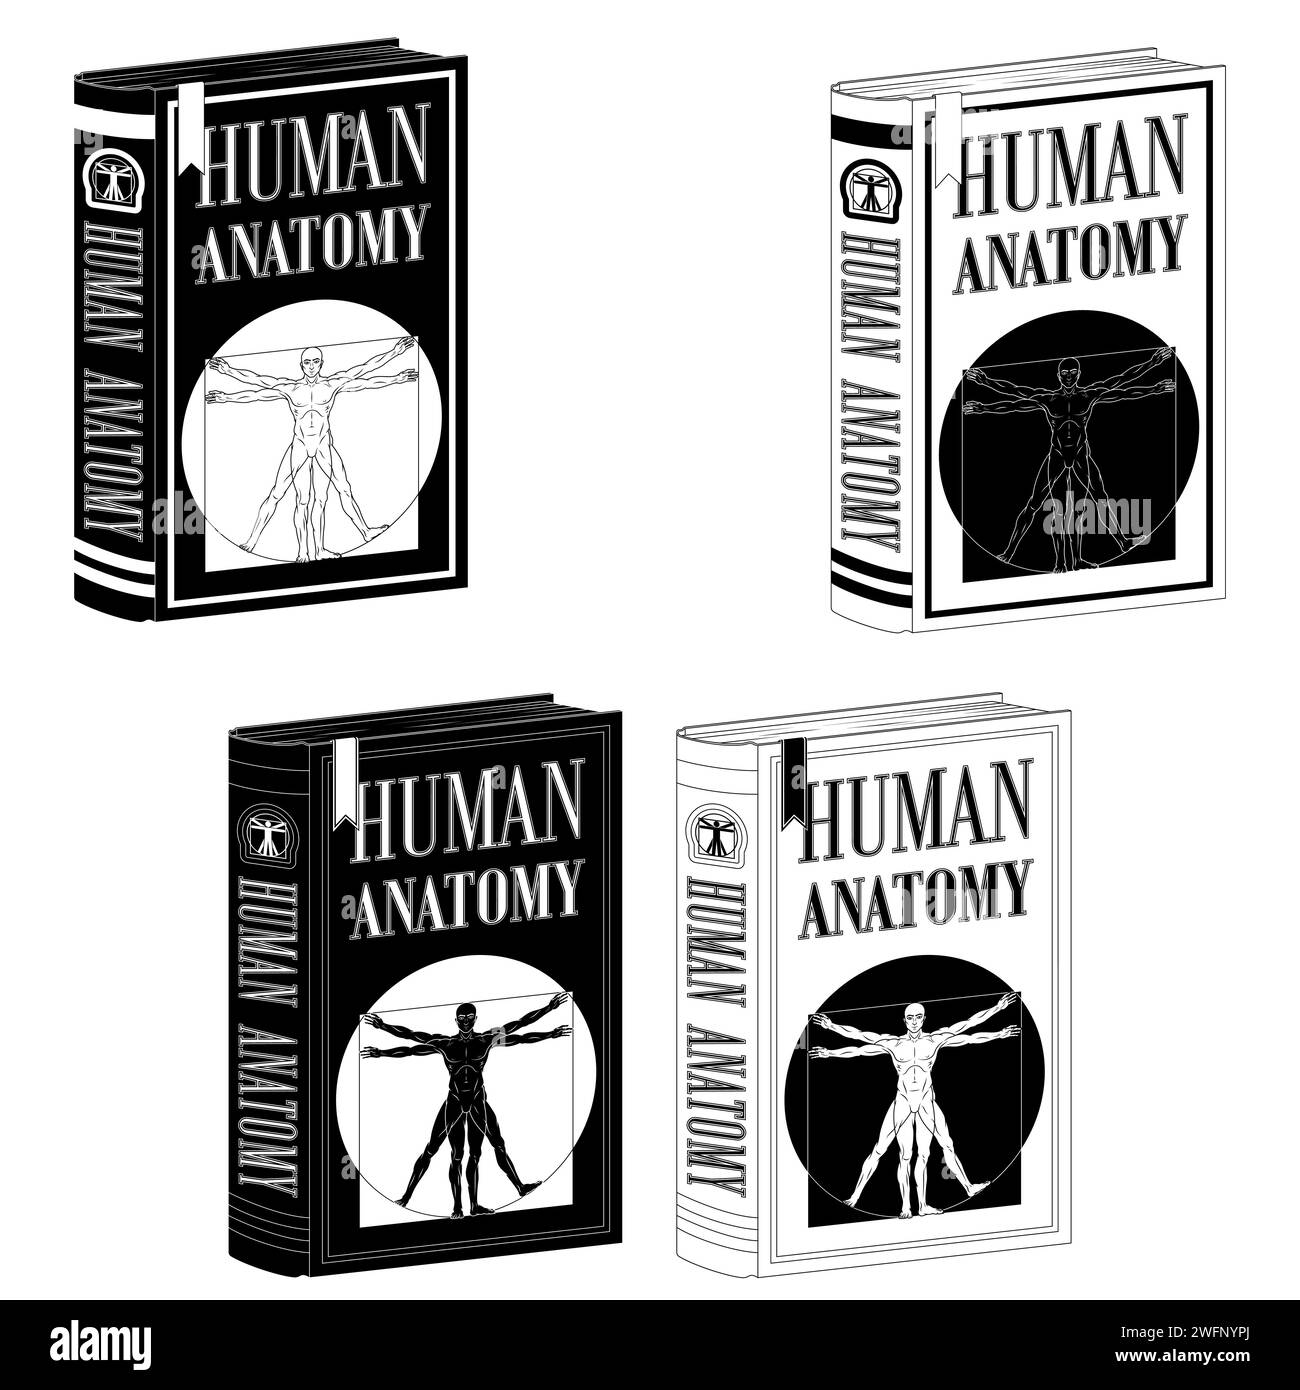 Vektor-Design Human Anatomy College Buch, Buch mit vitruvian Mann auf dem Cover Stock Vektor